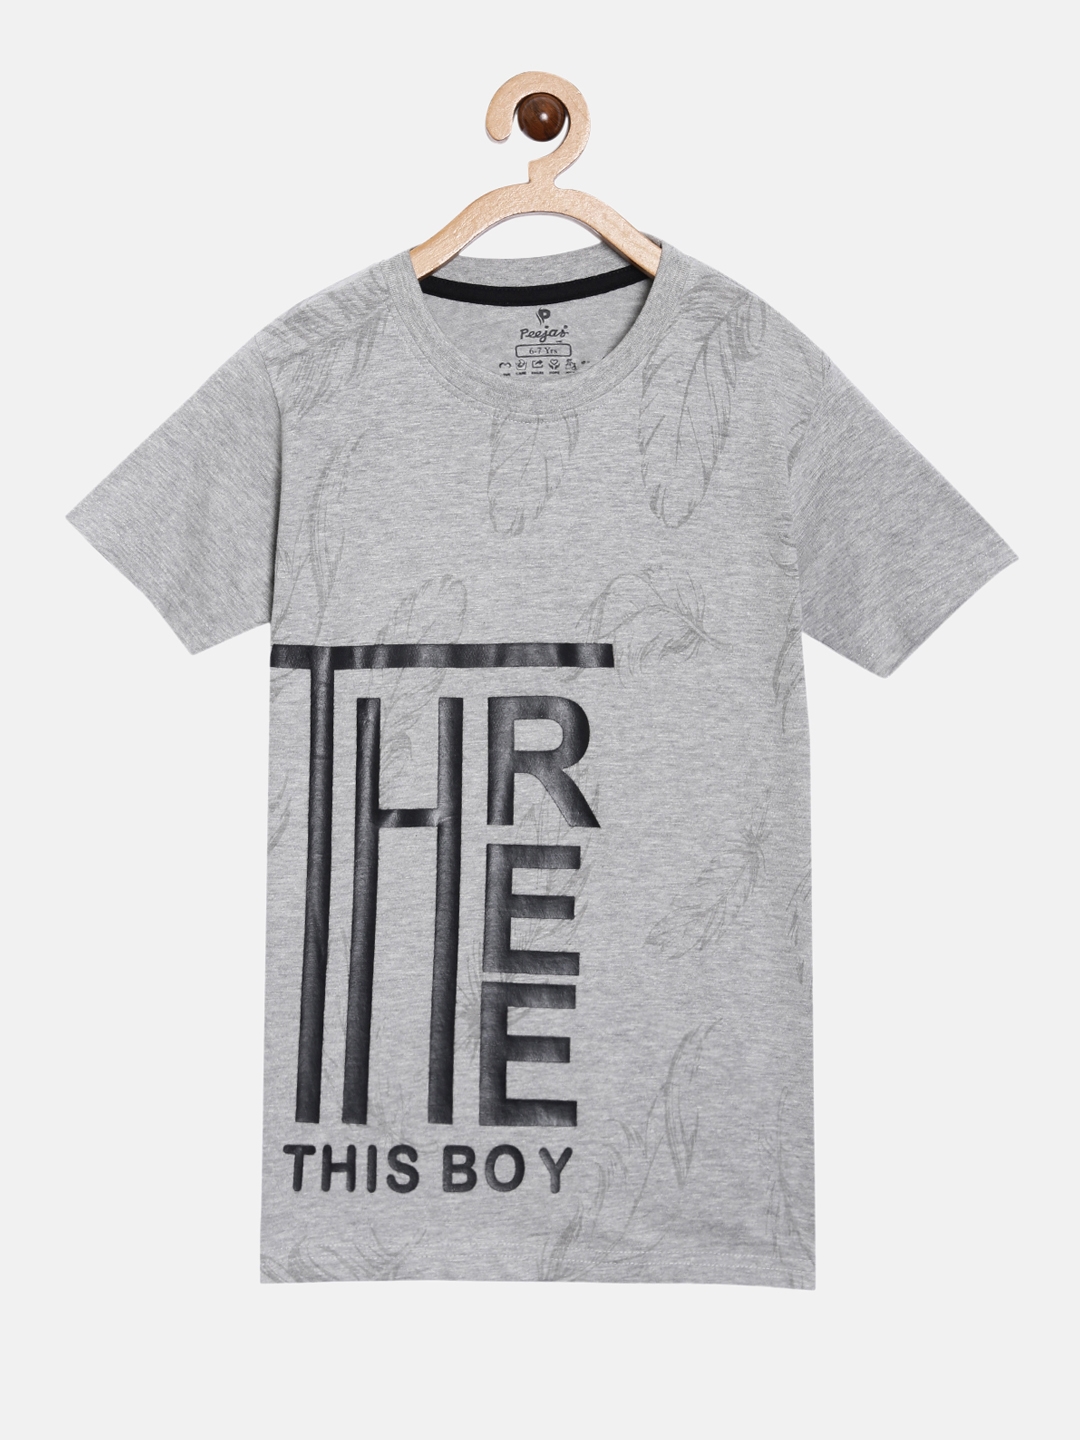 Peejas | Peejas Kids Boys 100% Cotton Printed Casual Tshirt 4